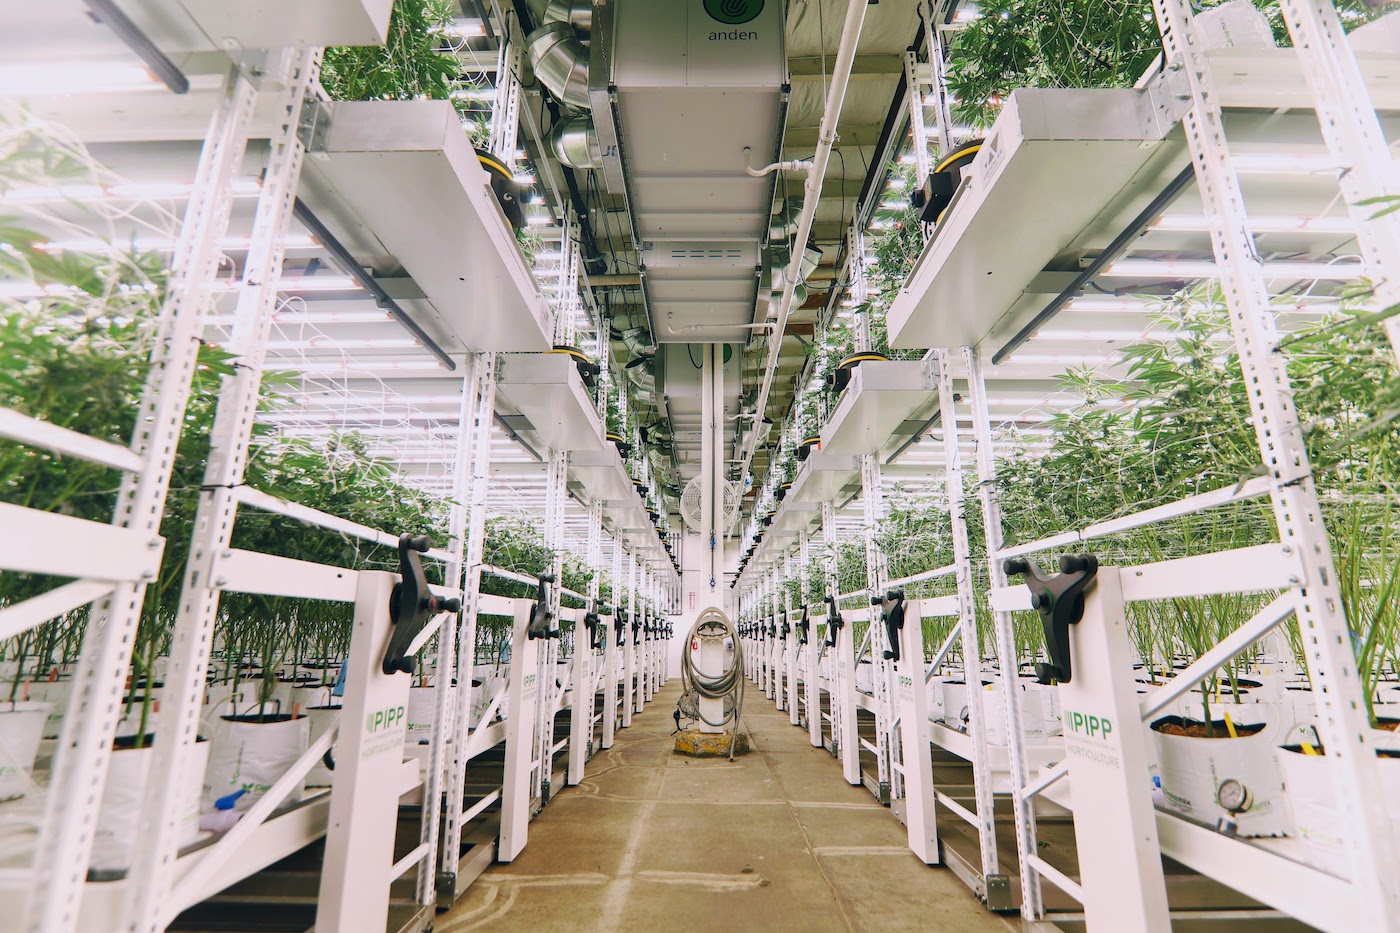 Pipp Horticulture Grow Racks Indoor System